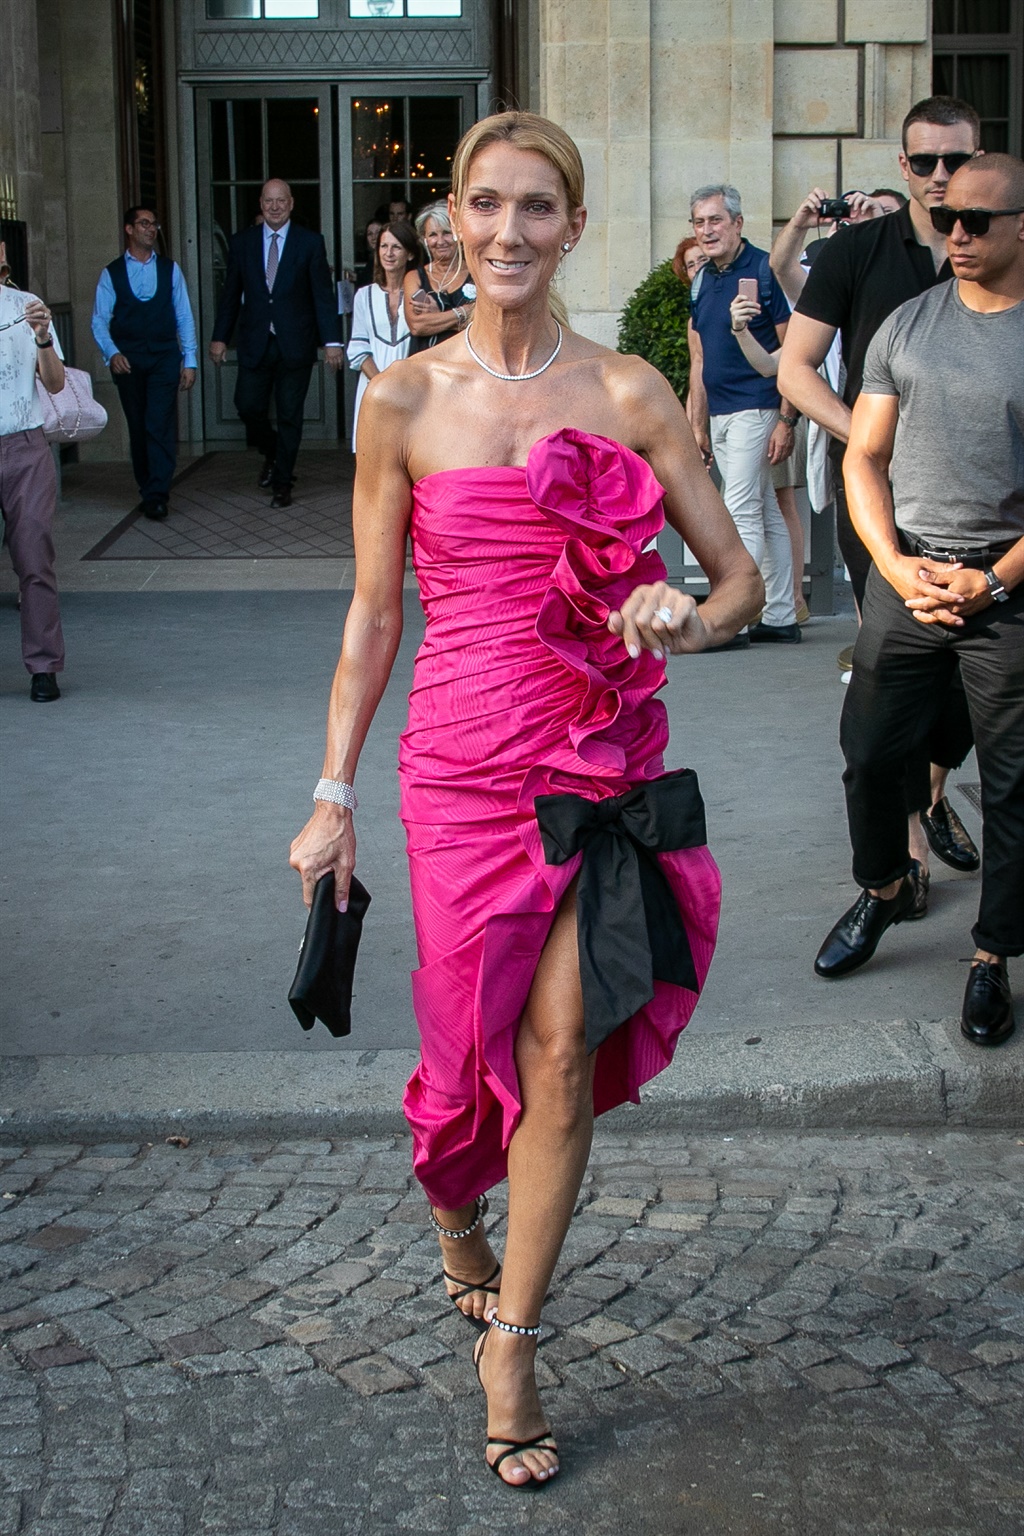 PARIS, FRANCE - JUNE 29: Singer Celine Dion is see